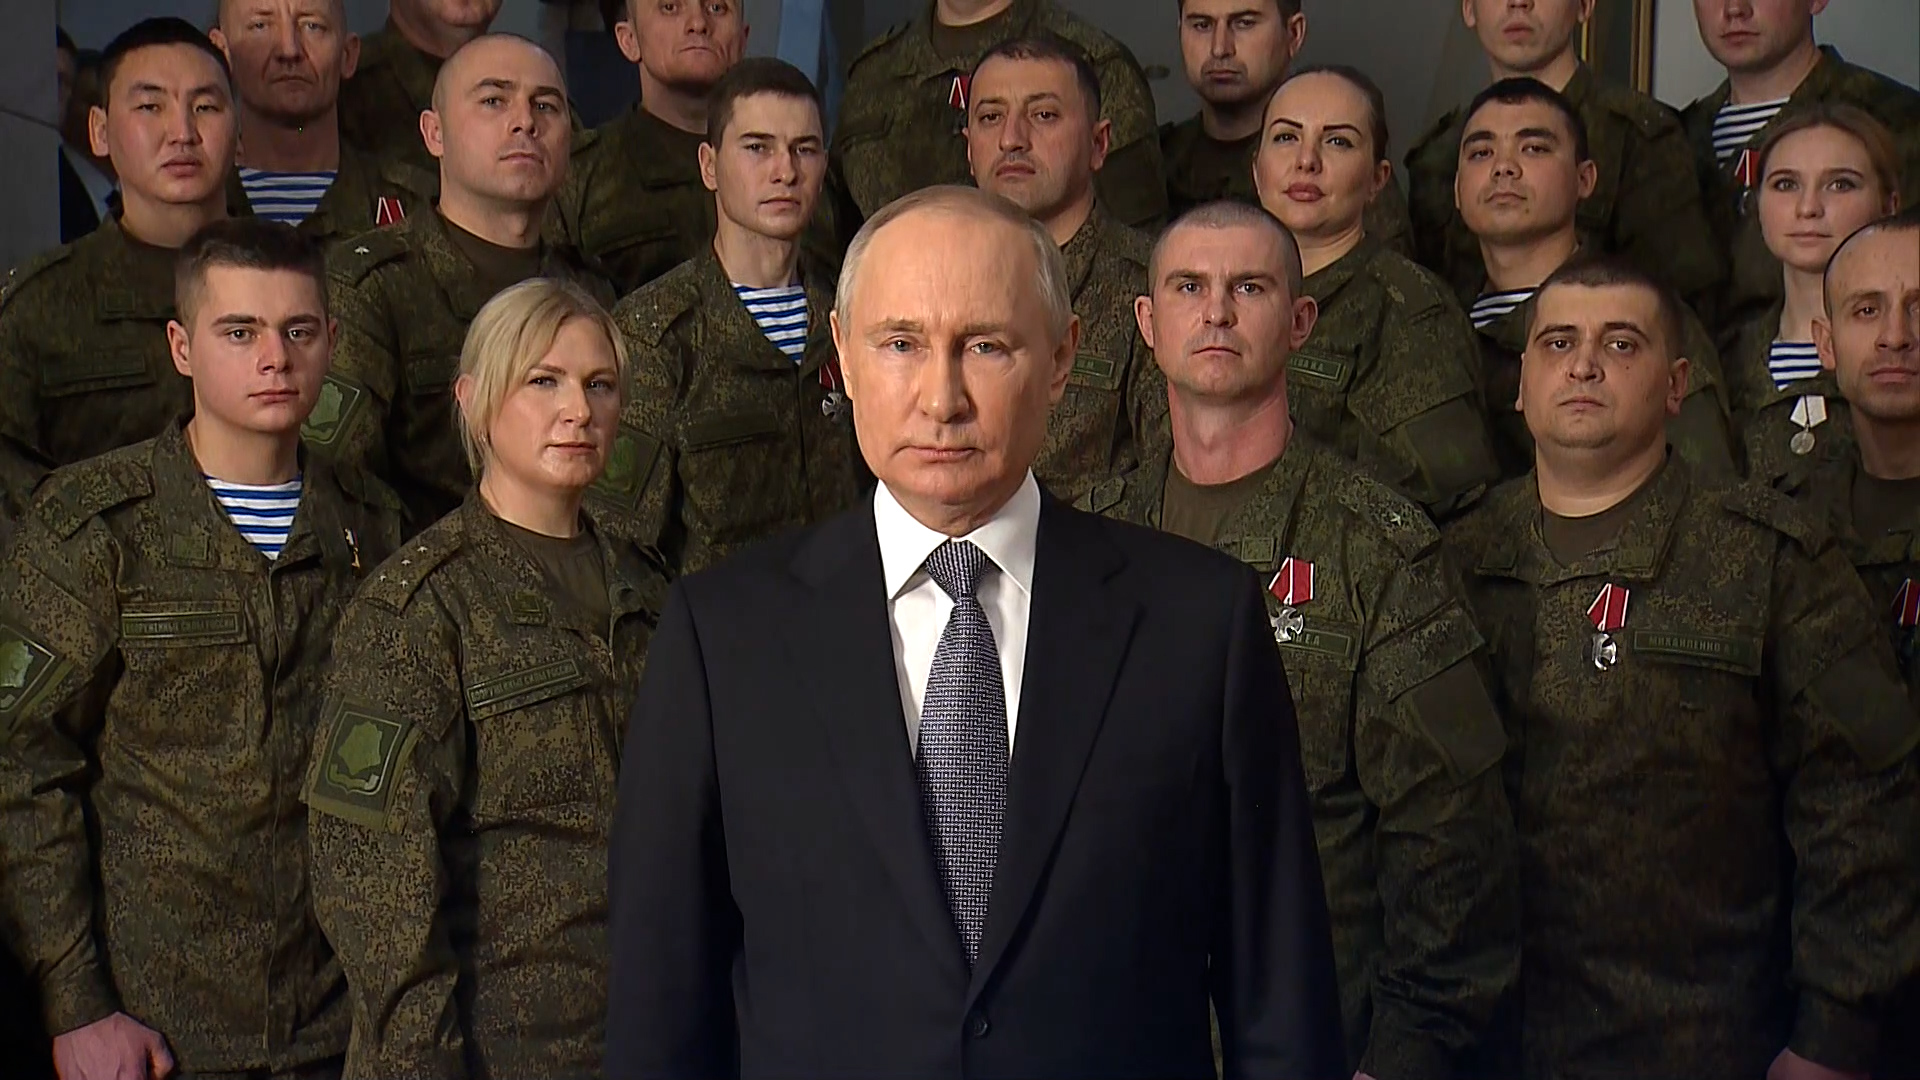 Кремль опубликовал полное видео новогоднего обращения Путина с солдатами за спиной